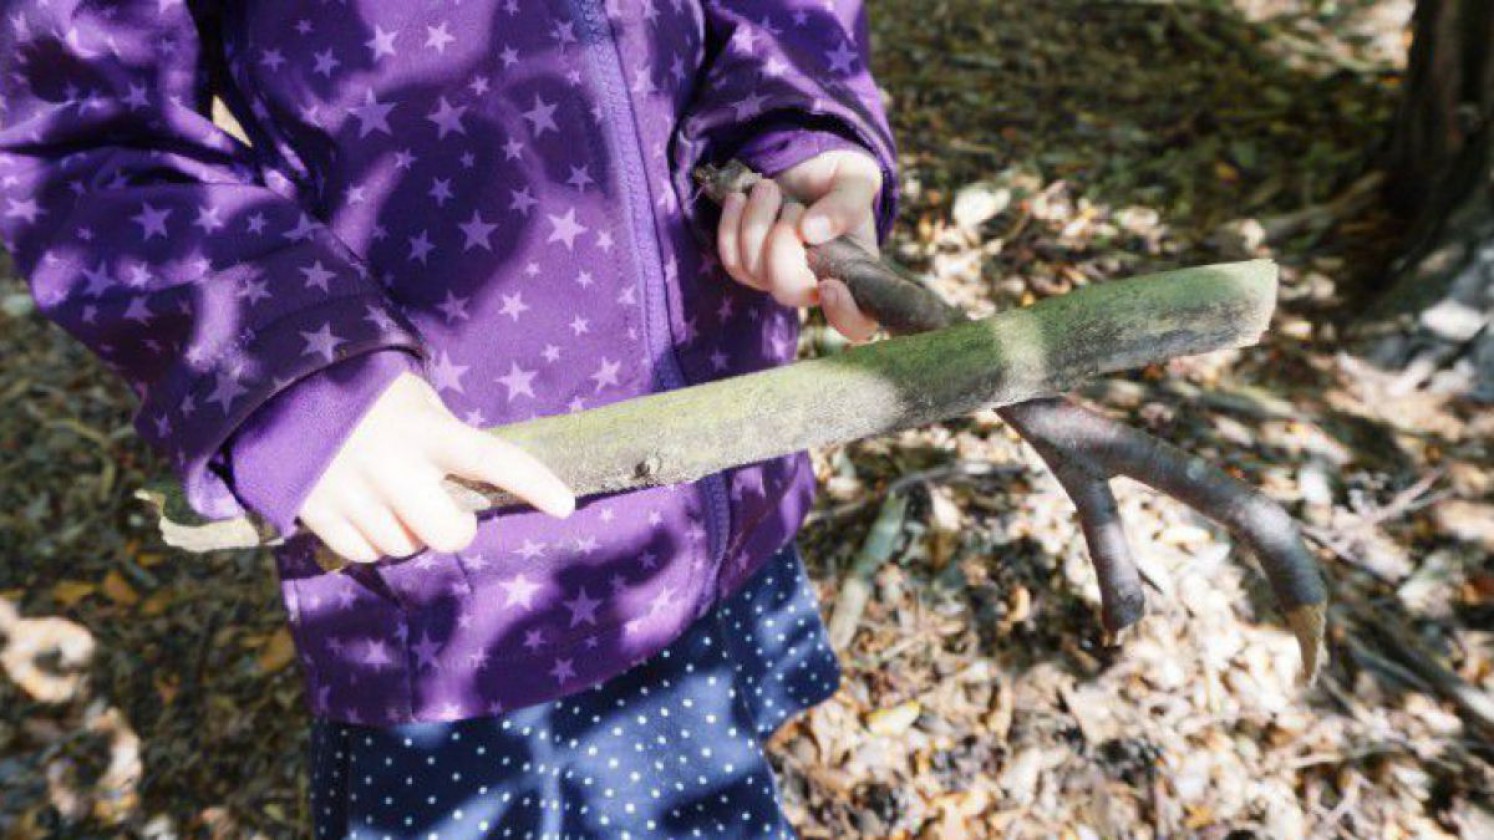 Kind beim Klanghölzer sammeln im Wald.